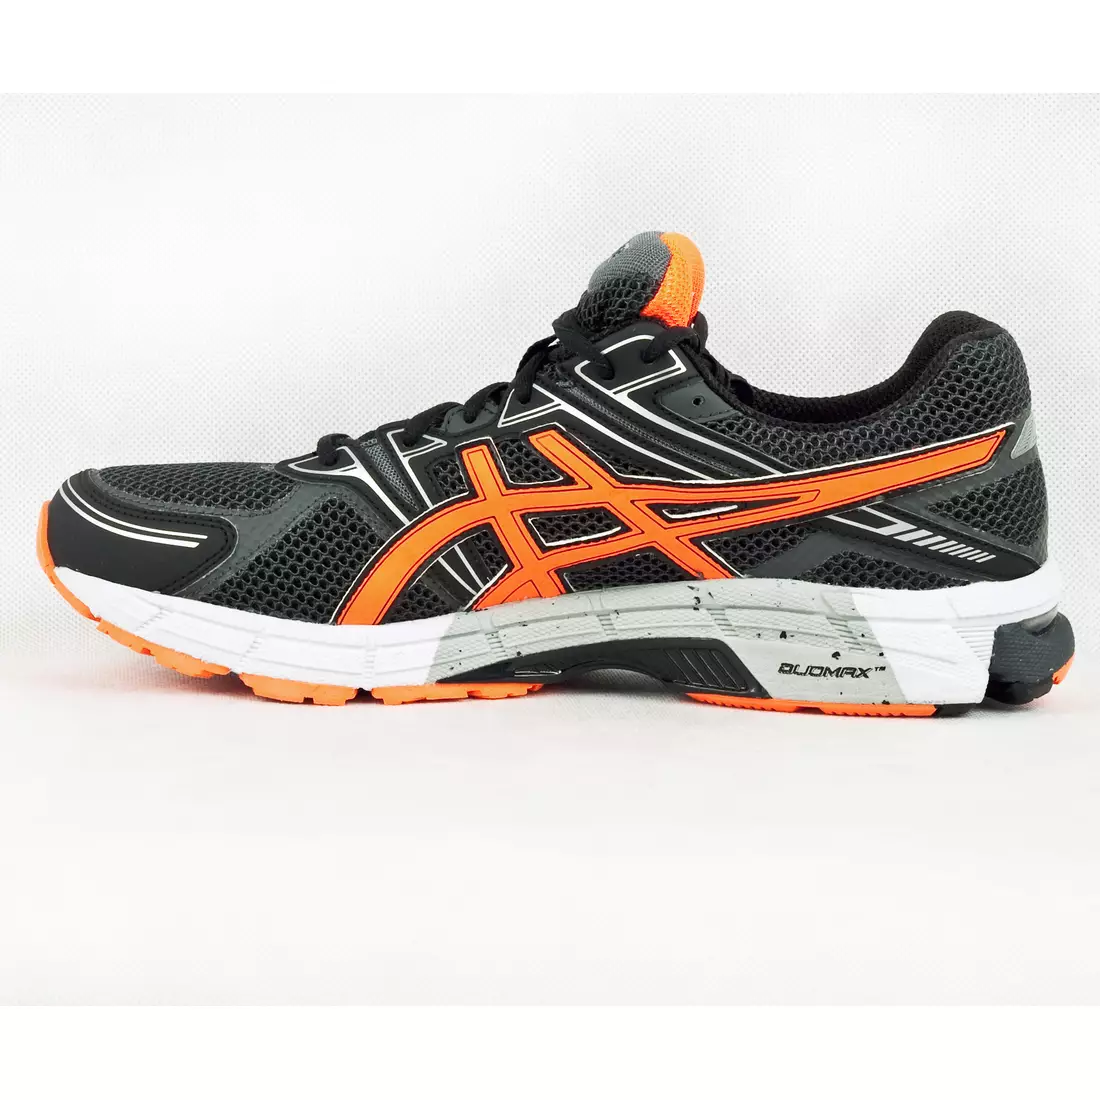 Pantofi de alergare ASICS GT-1000 G-TX - 9030, culoare: Negru și portocaliu